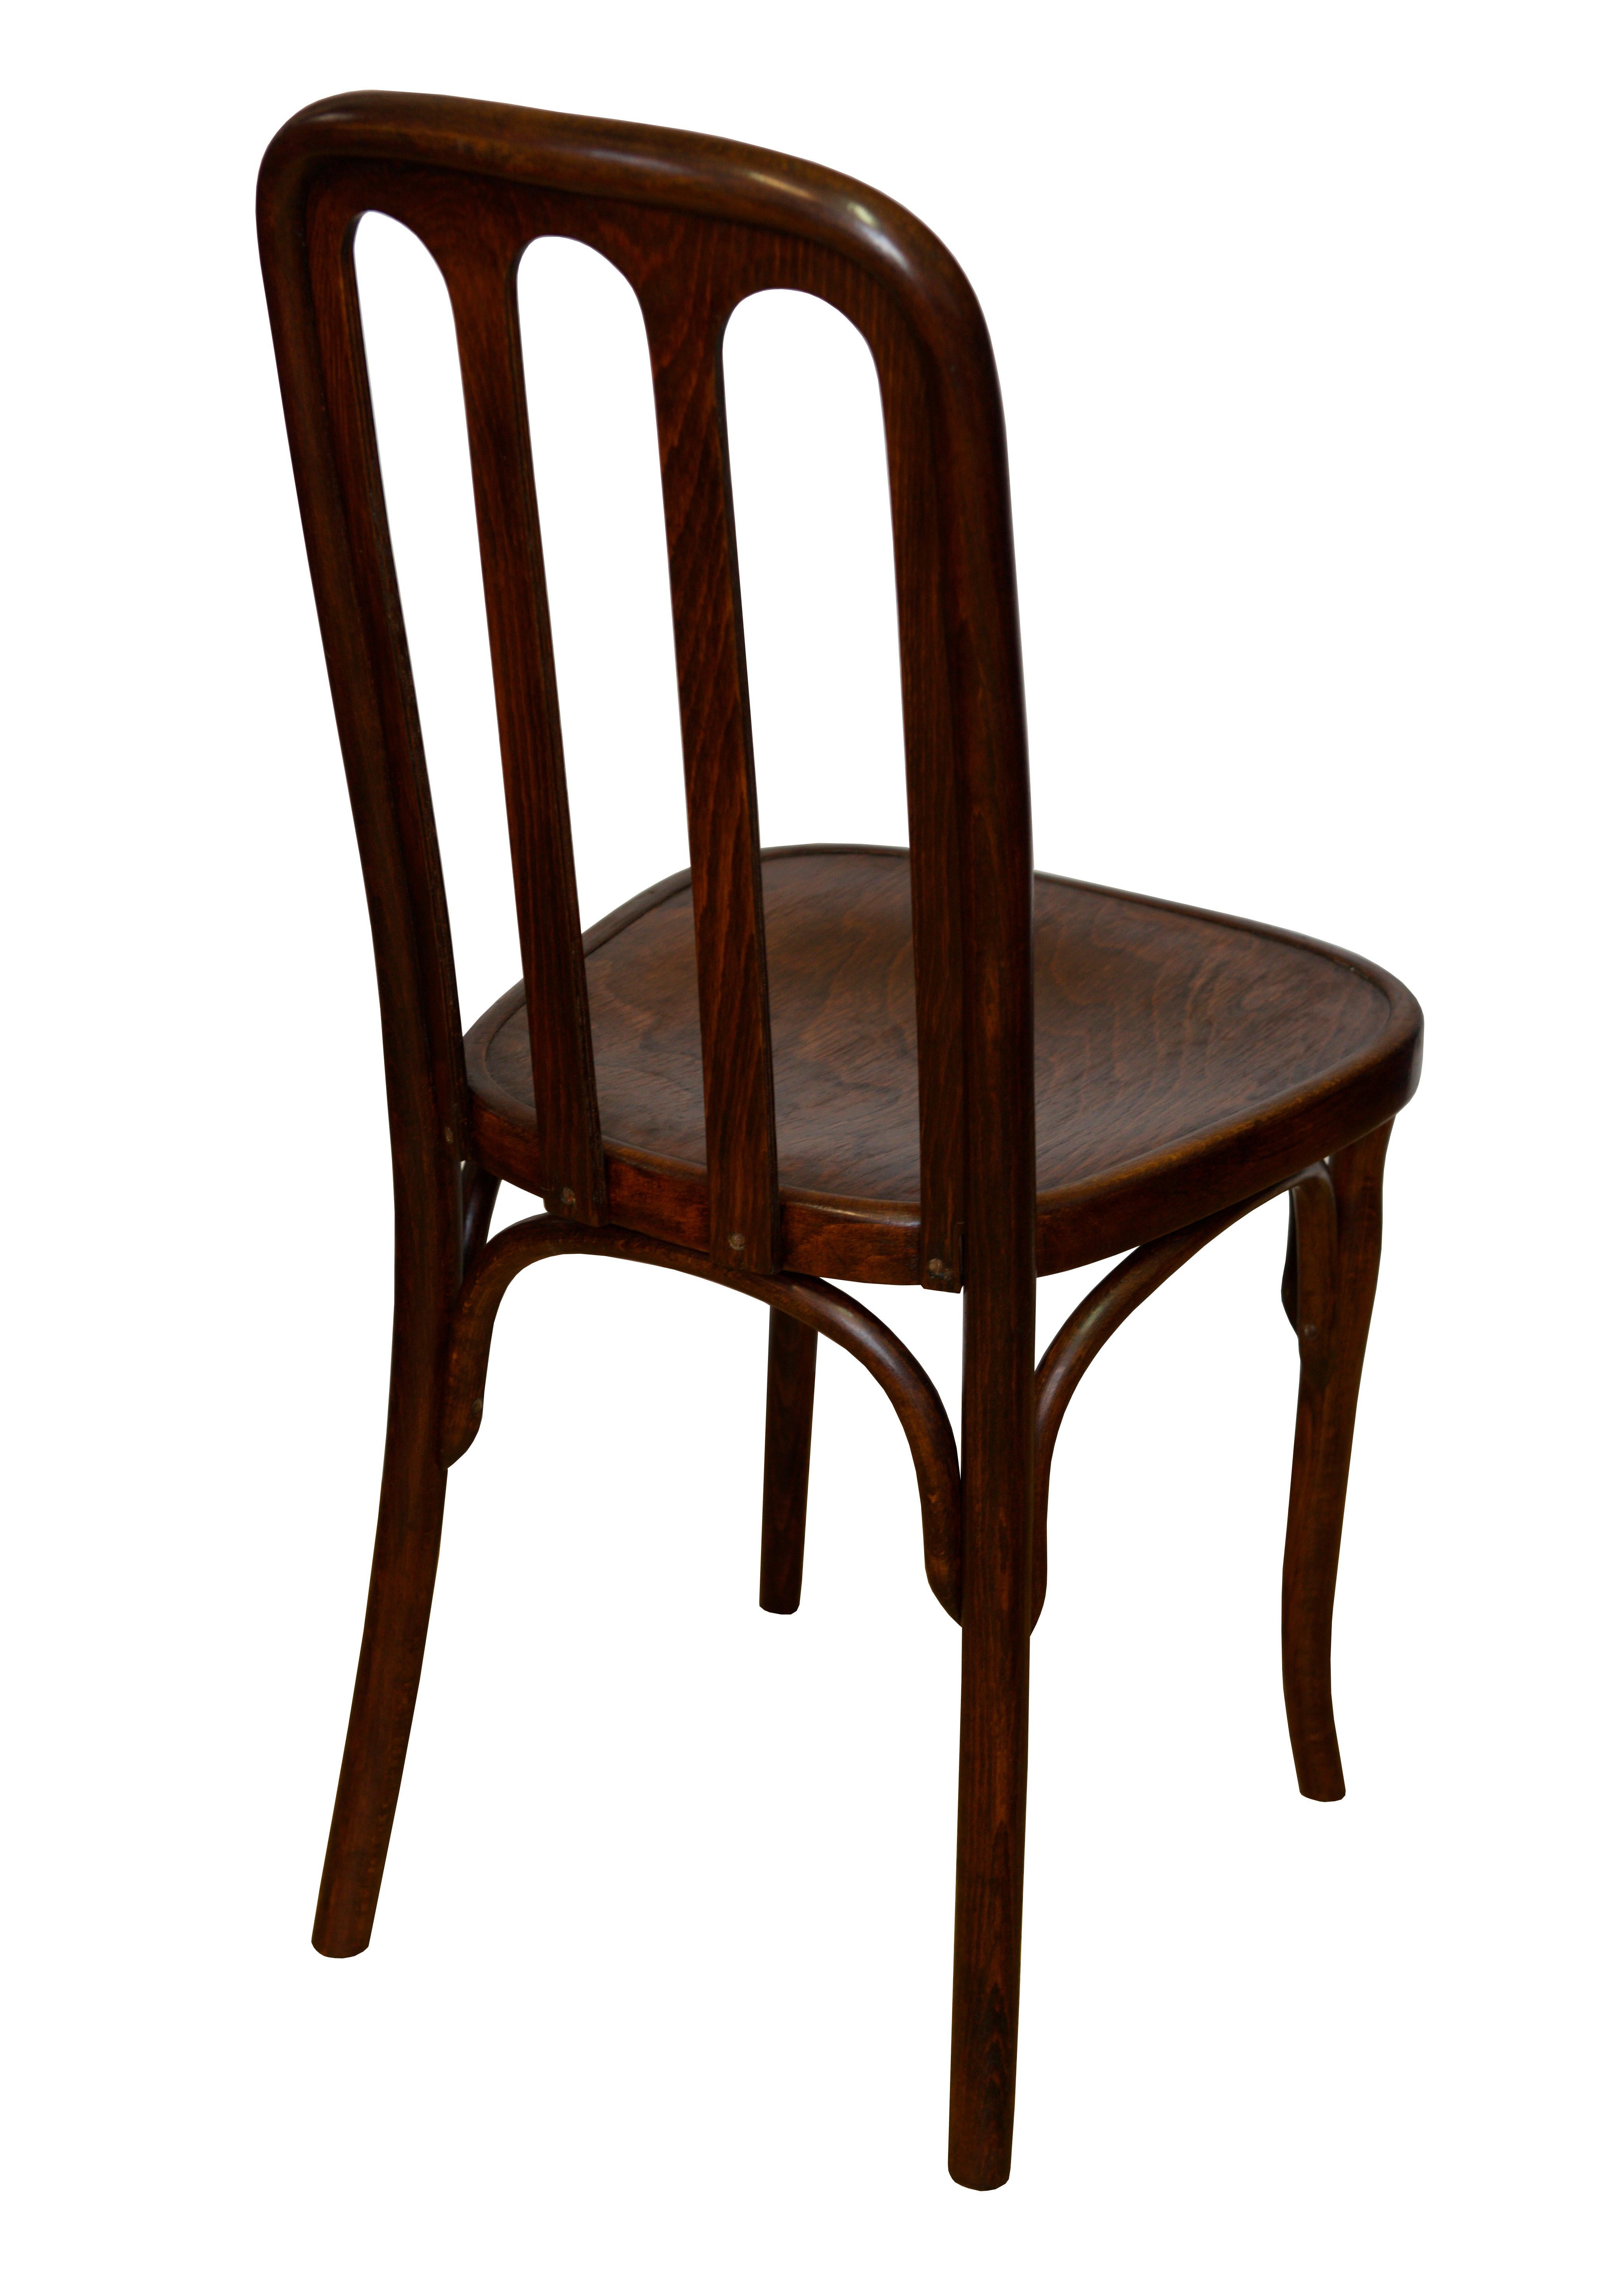 Es wird angenommen, dass dieser Stuhl 1905 von der Möbelfirma Josef und Jacob Kohn in Wsetin, Österreich, hergestellt und vom legendären Josef Hoffmann entworfen wurde. Hoffman entwarf zu Beginn des 20. Jahrhunderts mehrere Stücke für die Firma